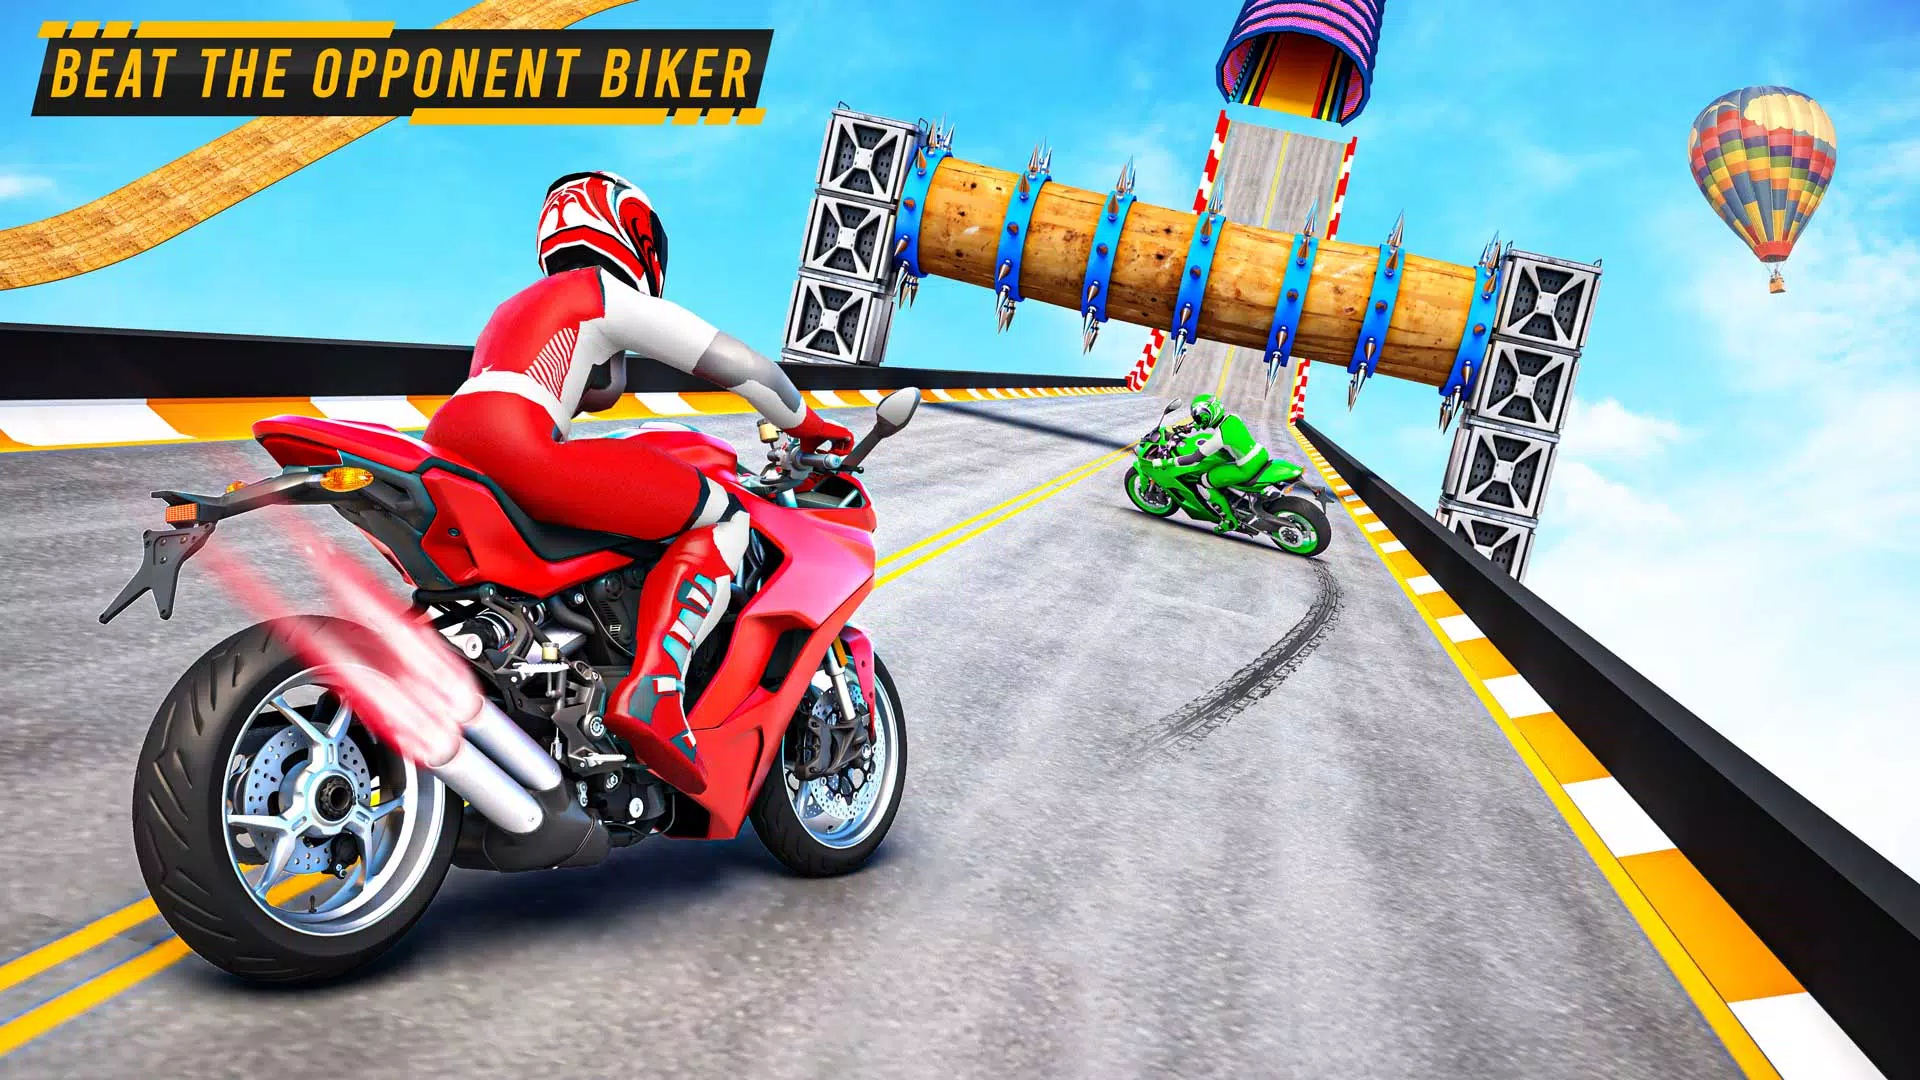 Jogos de moto para Android e iPhone: [TOP online e offline]